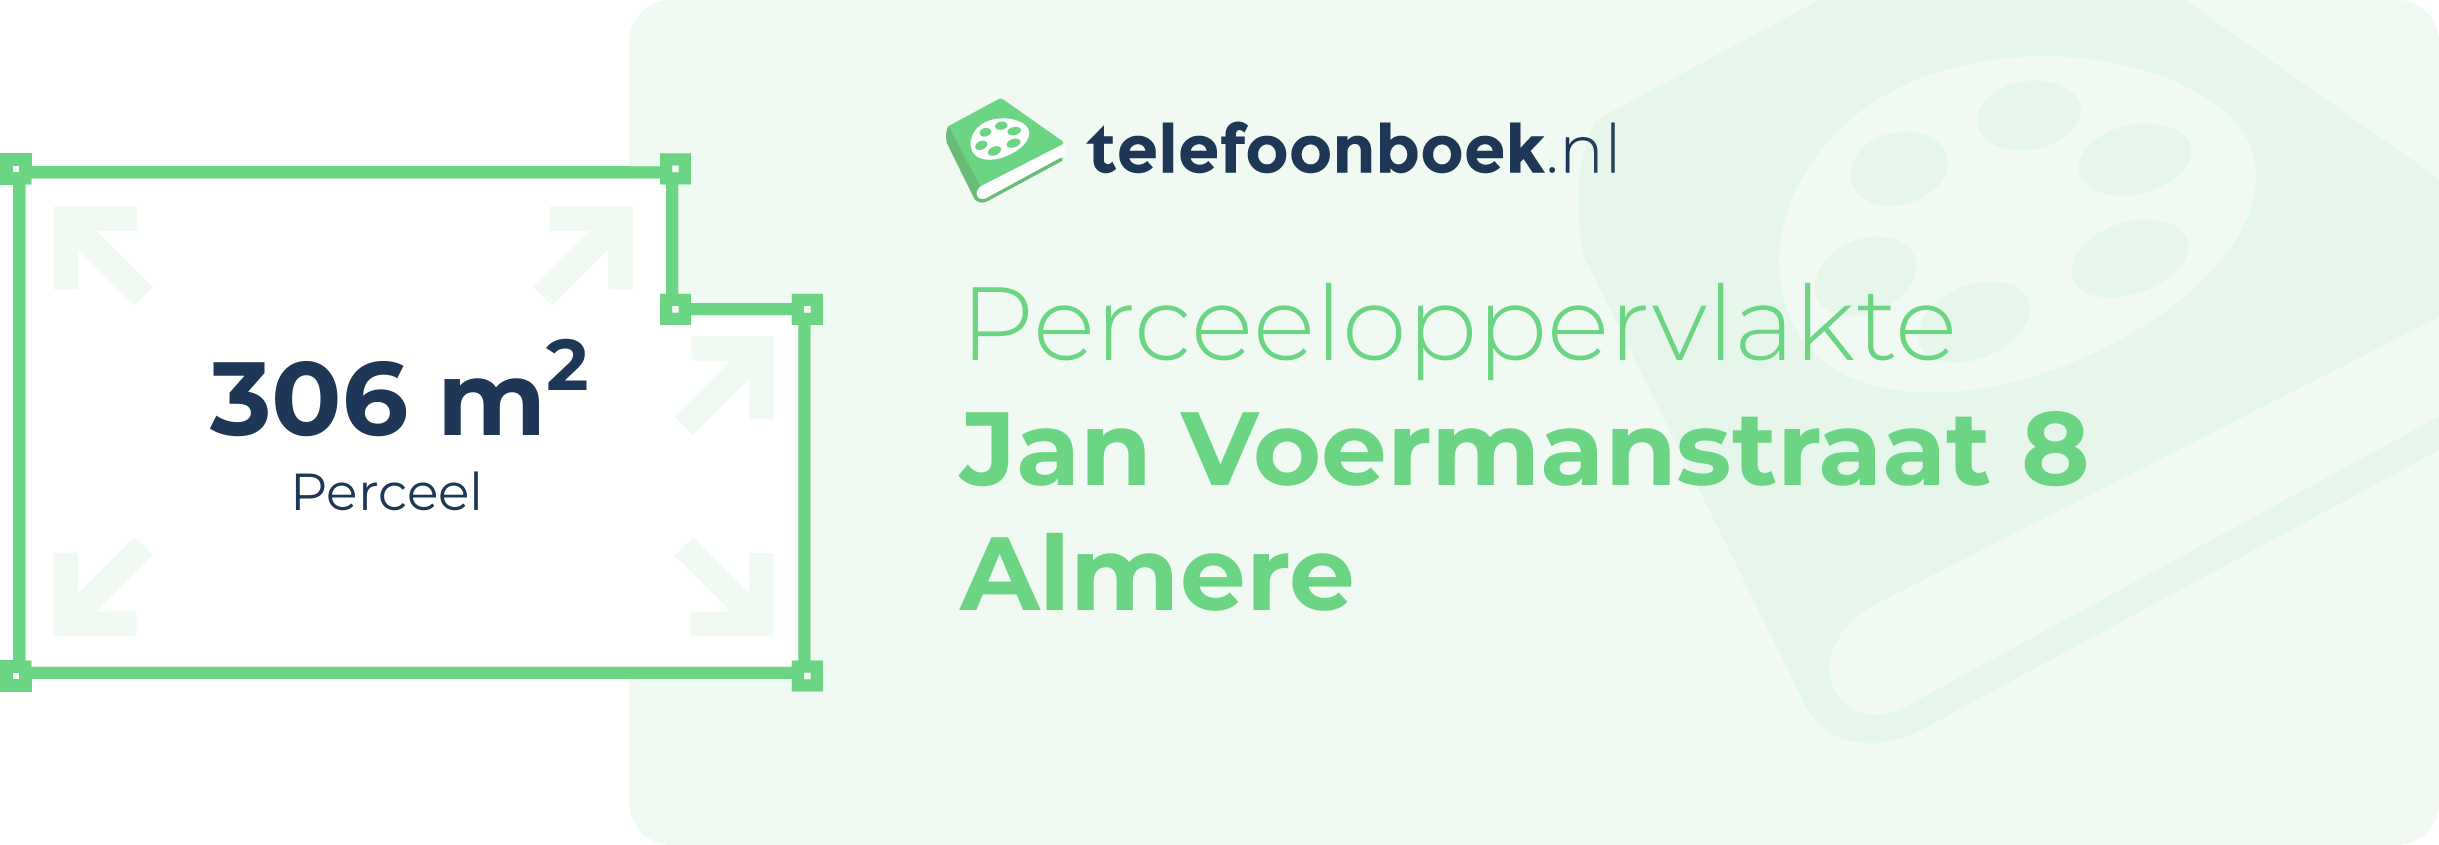 Perceeloppervlakte Jan Voermanstraat 8 Almere